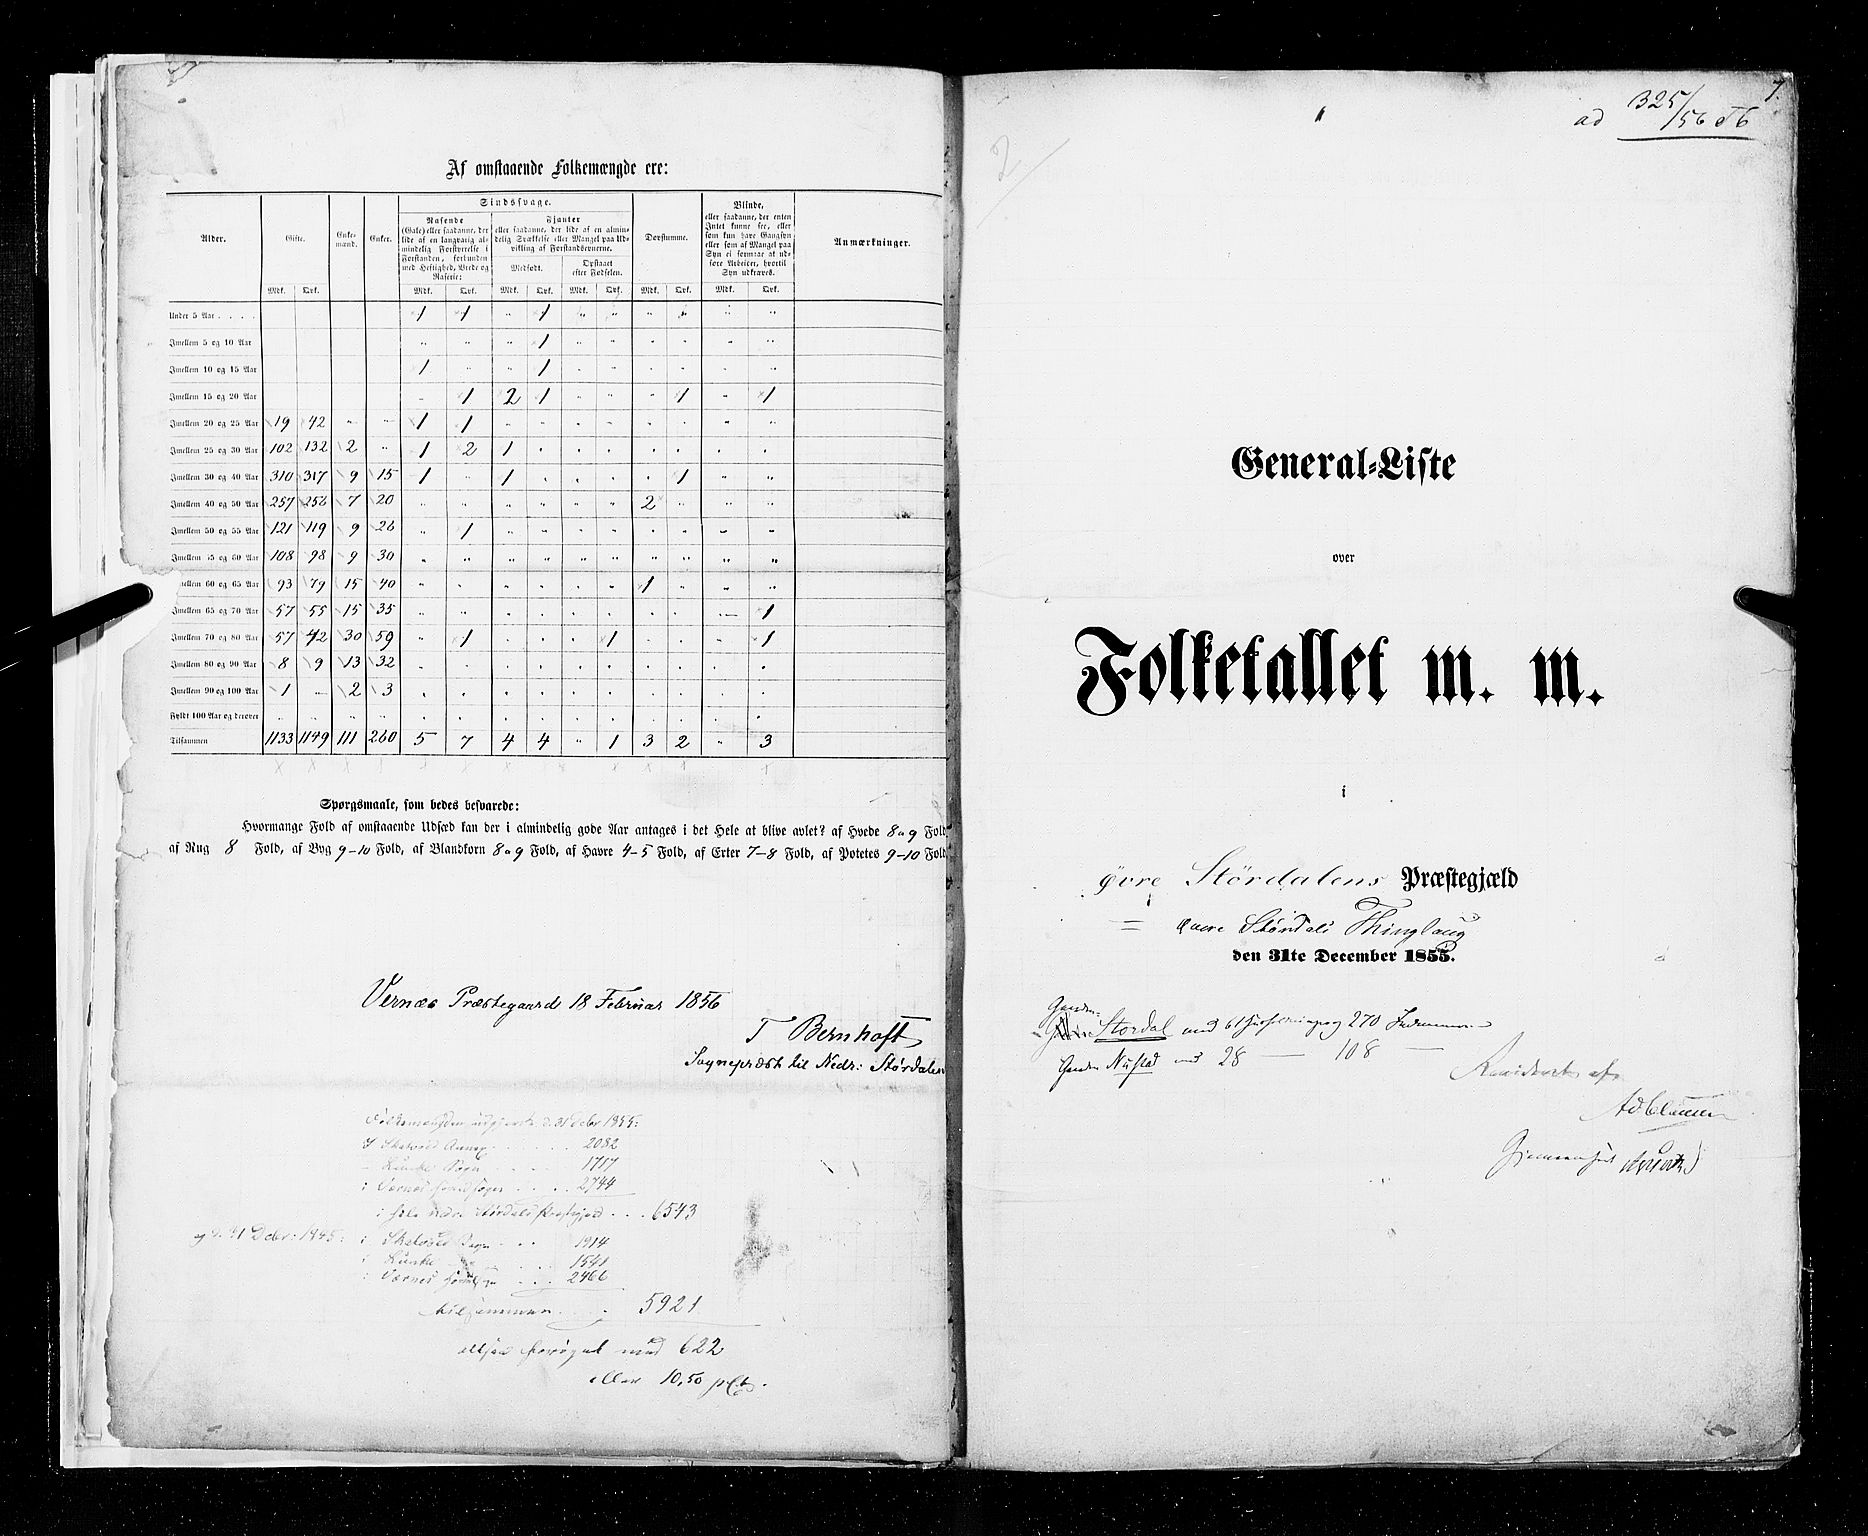 RA, Folketellingen 1855, bind 6A: Nordre Trondhjem amt og Nordland amt, 1855, s. 7